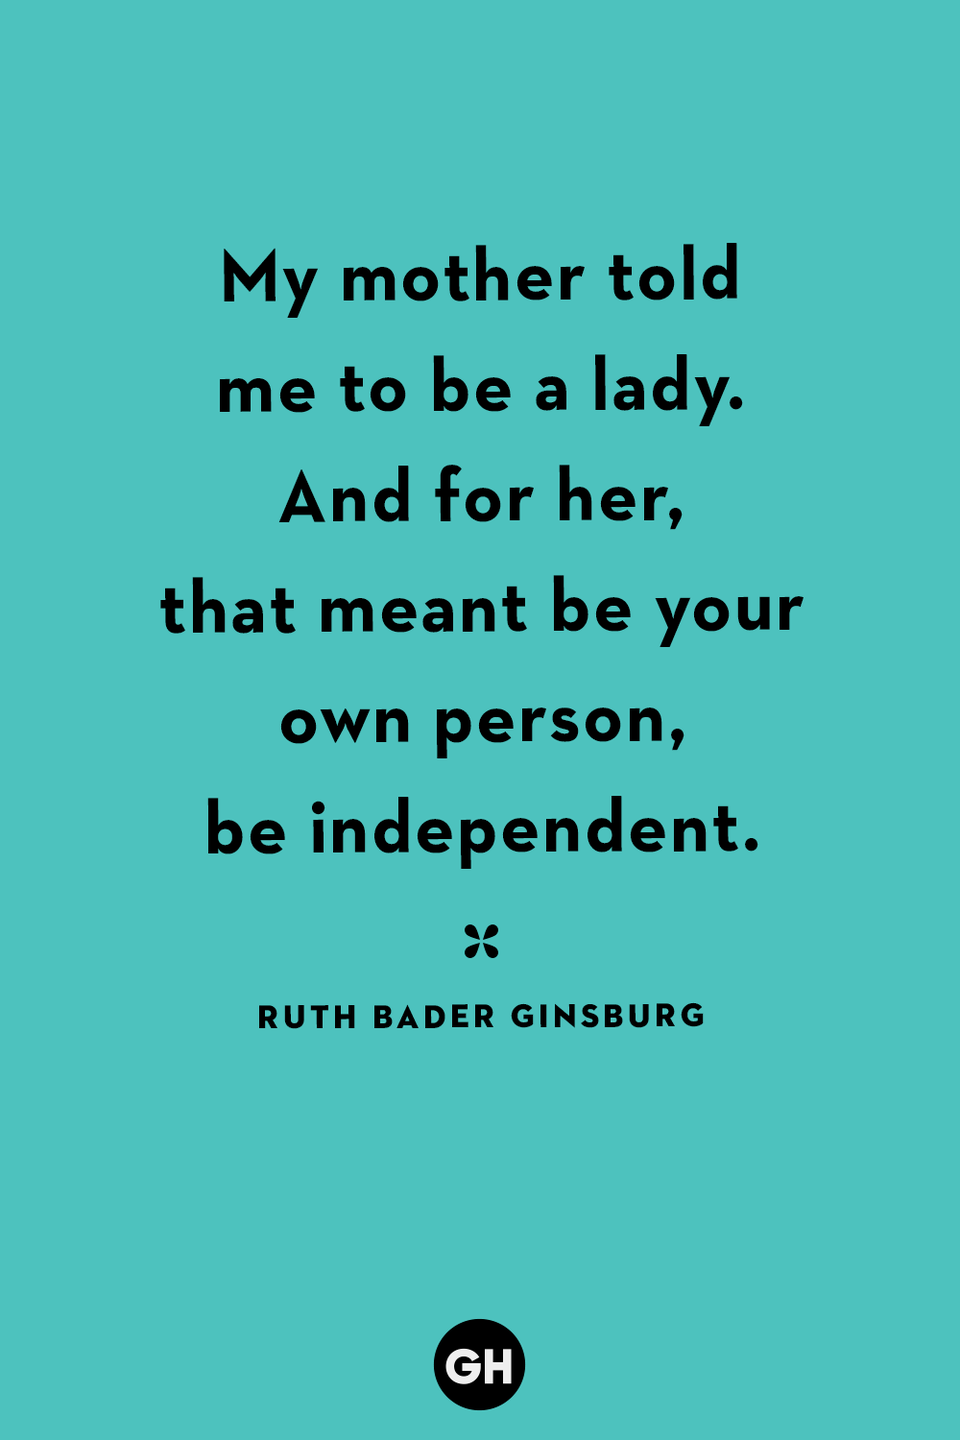 35) Ruth Bader Ginsburg